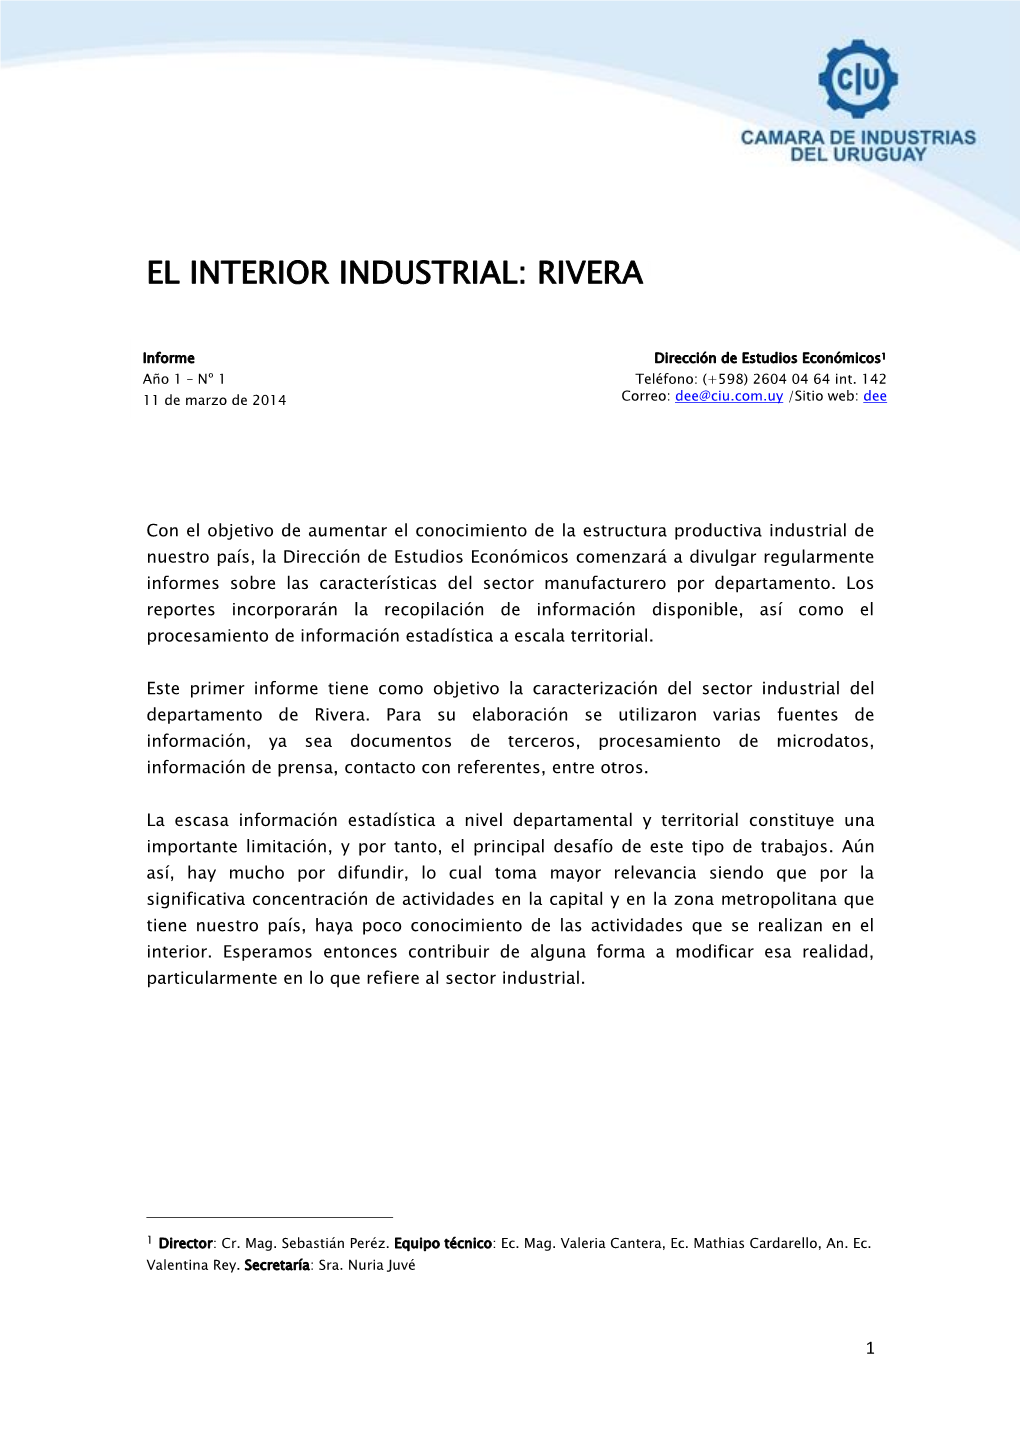 El Interior Industrial: Rivera1